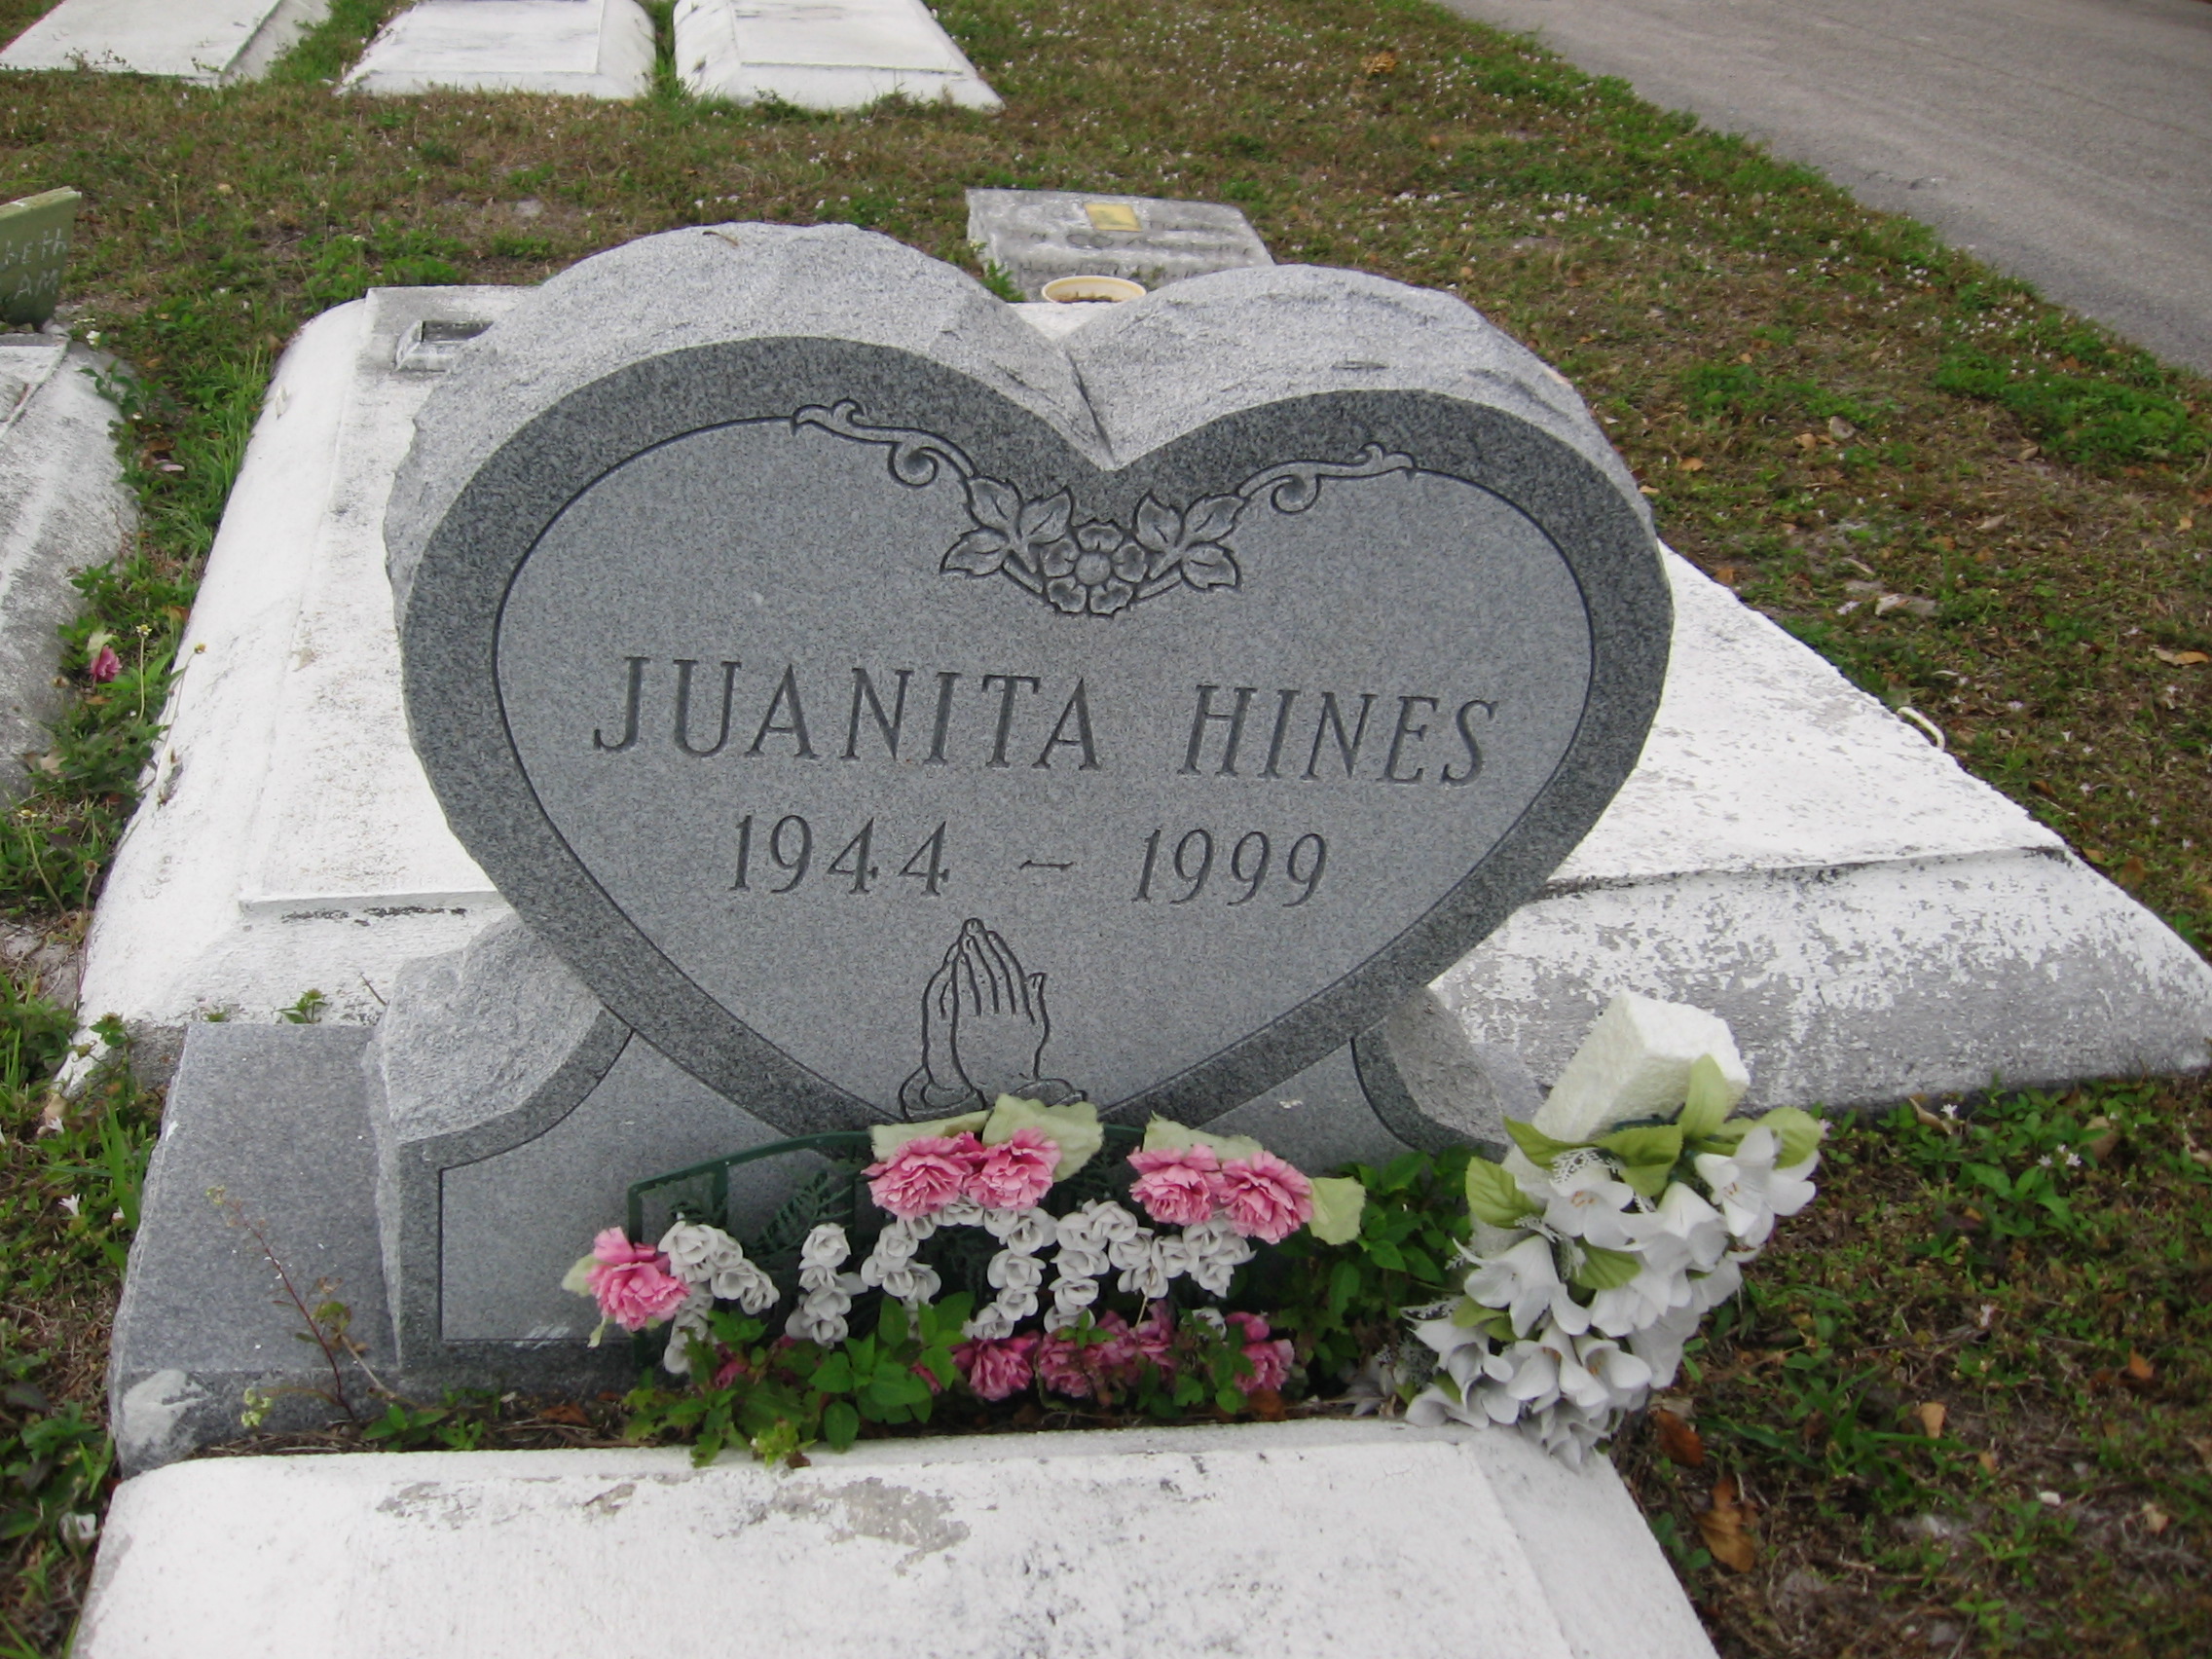 Juanita Hines